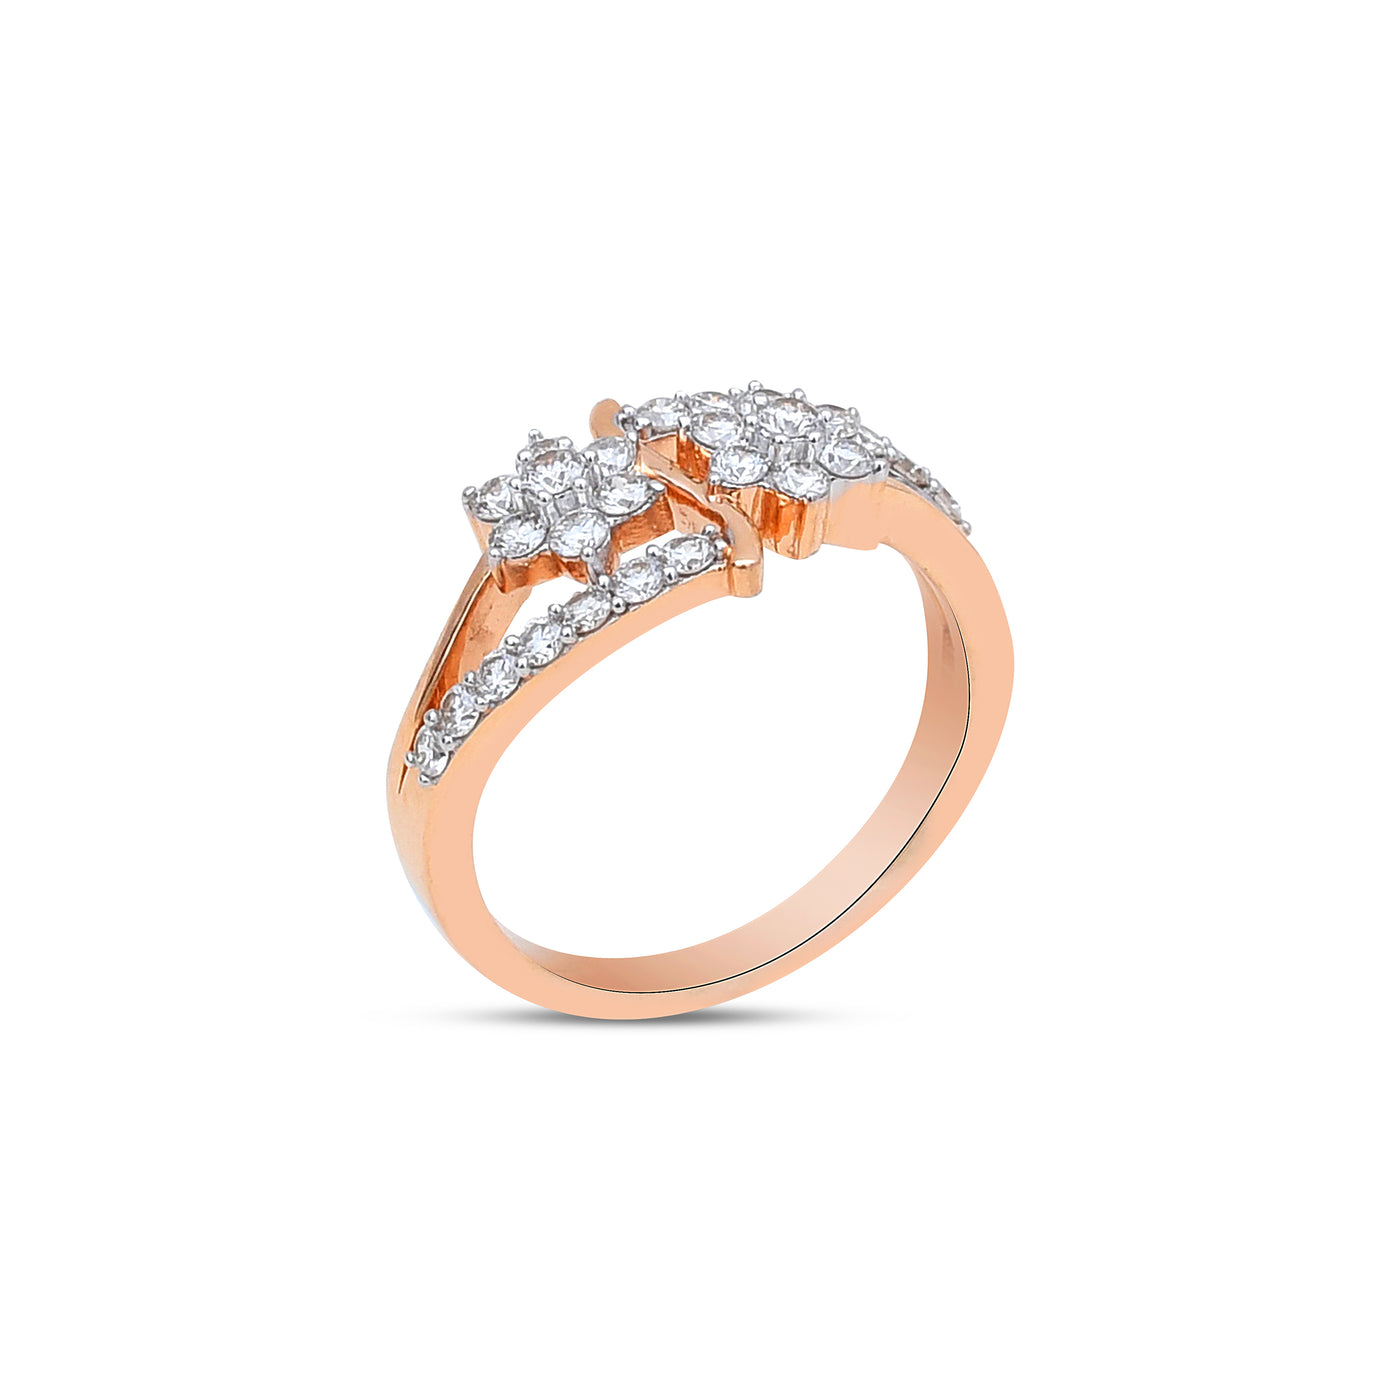 The Twin-Bloom Diamond Ring